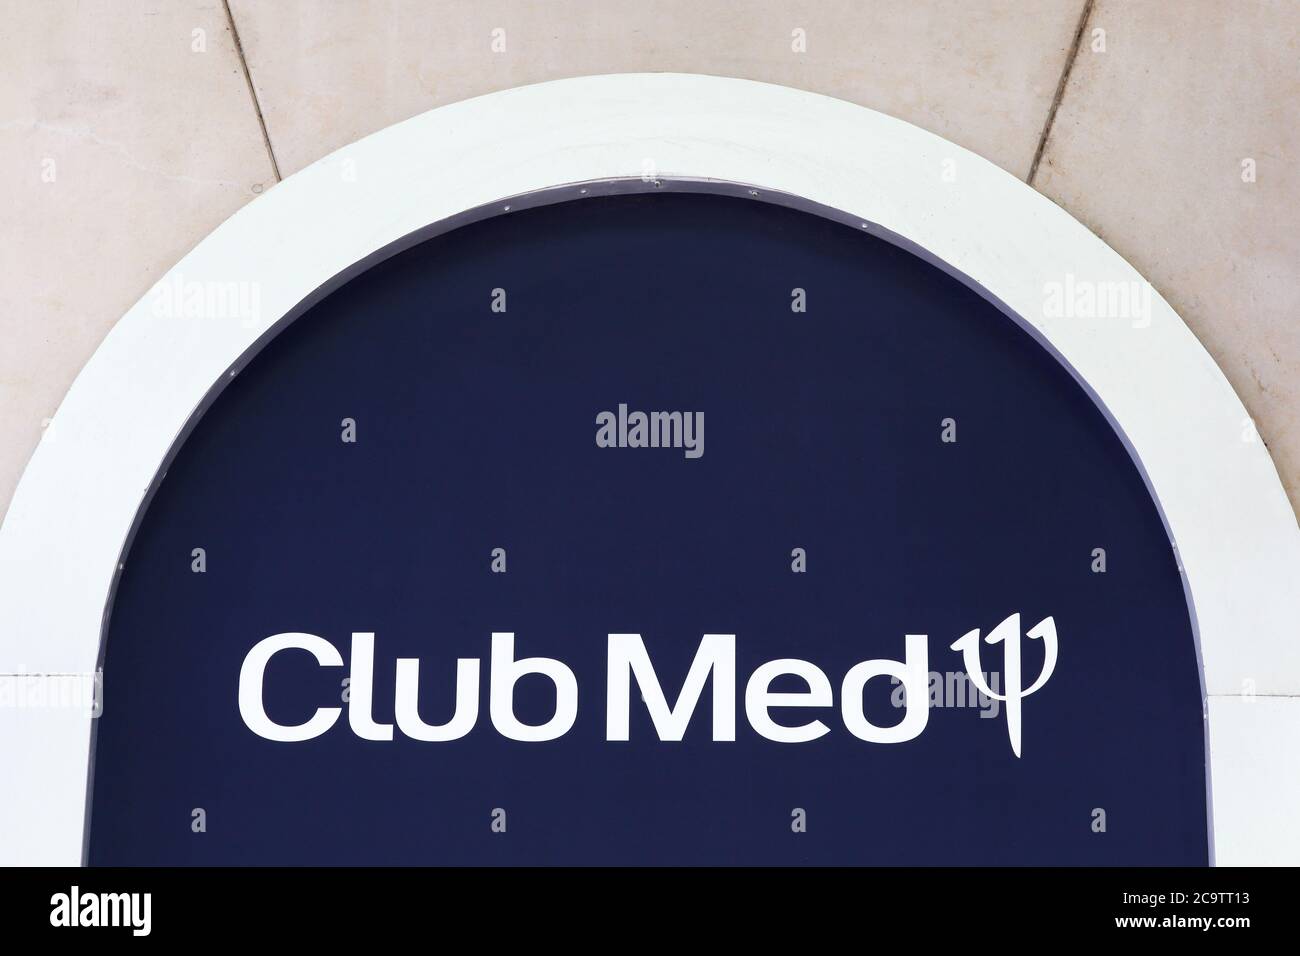 Lione, Francia - 28 giugno 2020: Logo Club med su una parete. Club Med e precedentemente conosciuto come Club Méditerranée è una società di proprietà cinese Foto Stock